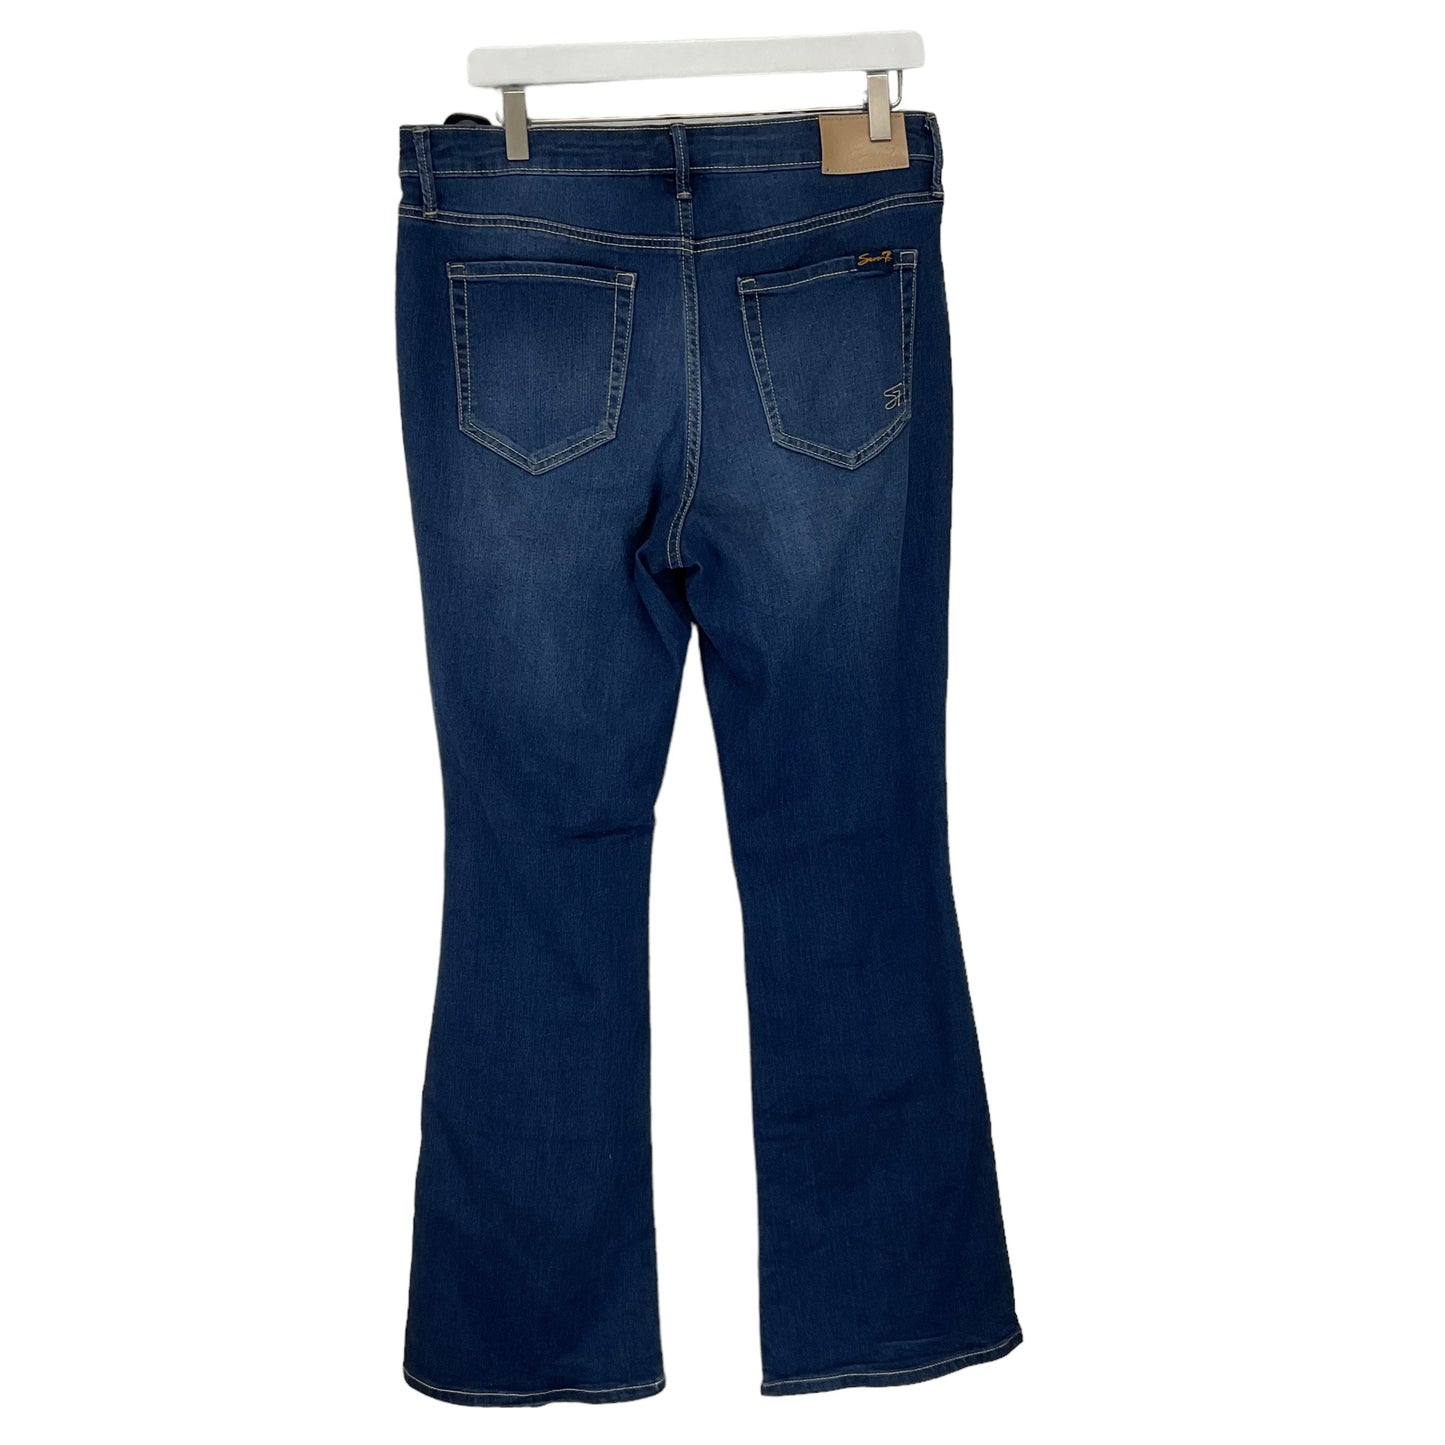 Blue Denim Jeans Boot Cut Seven 7, Size 10